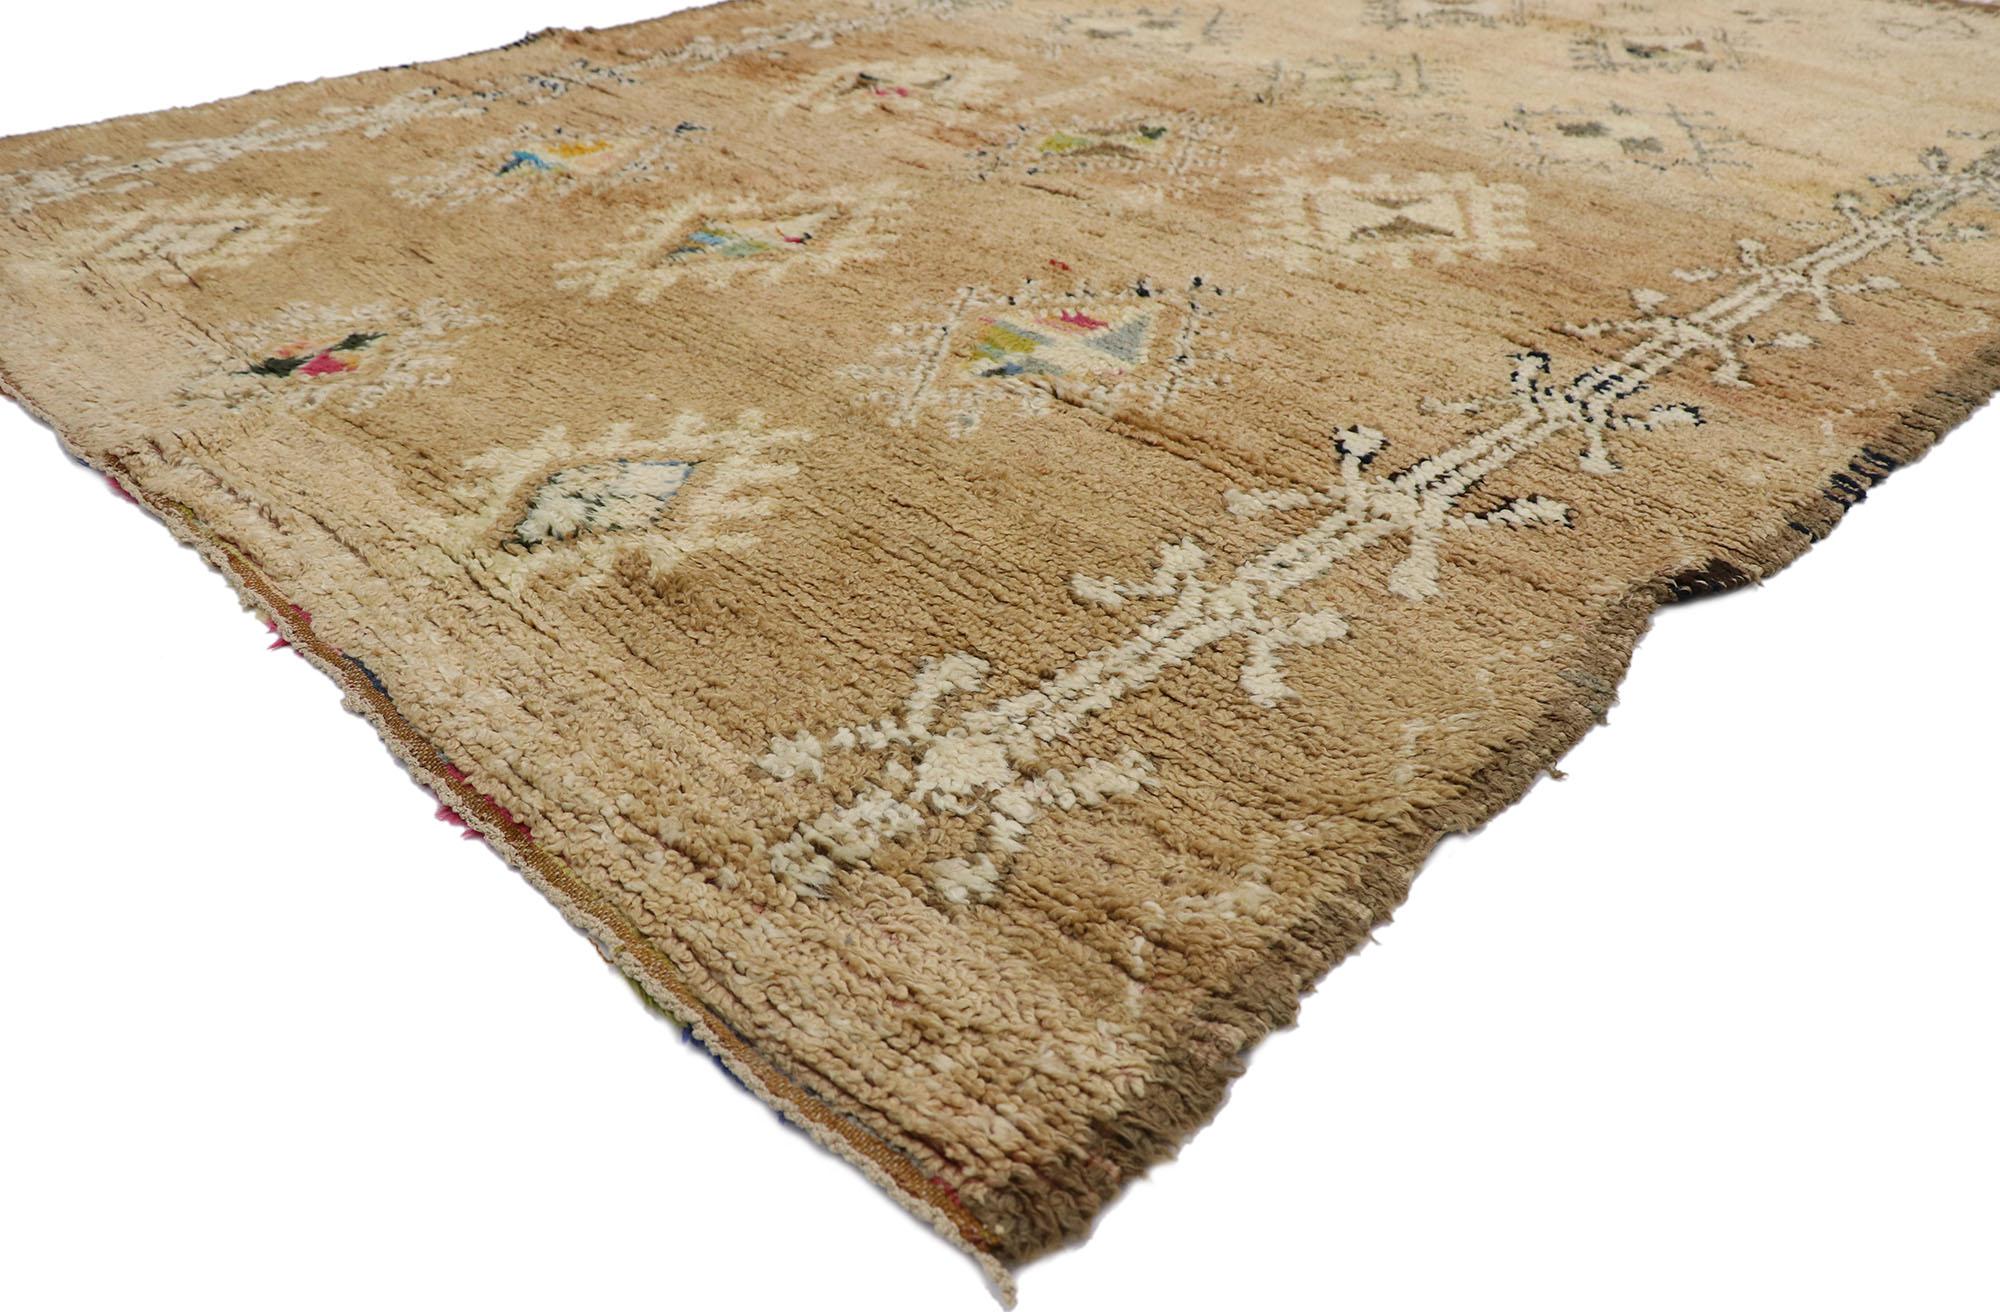 21313 Vintage Beni MGuild Marokkanischer Teppich, 06'07 x 09'08. Die vom Stamm der Beni M'Guild im Mittleren Atlasgebirge Marokkos stammenden Beni M'Guild-Teppiche verkörpern eine geschätzte Tradition, die von erfahrenen Berberfrauen in sorgfältiger